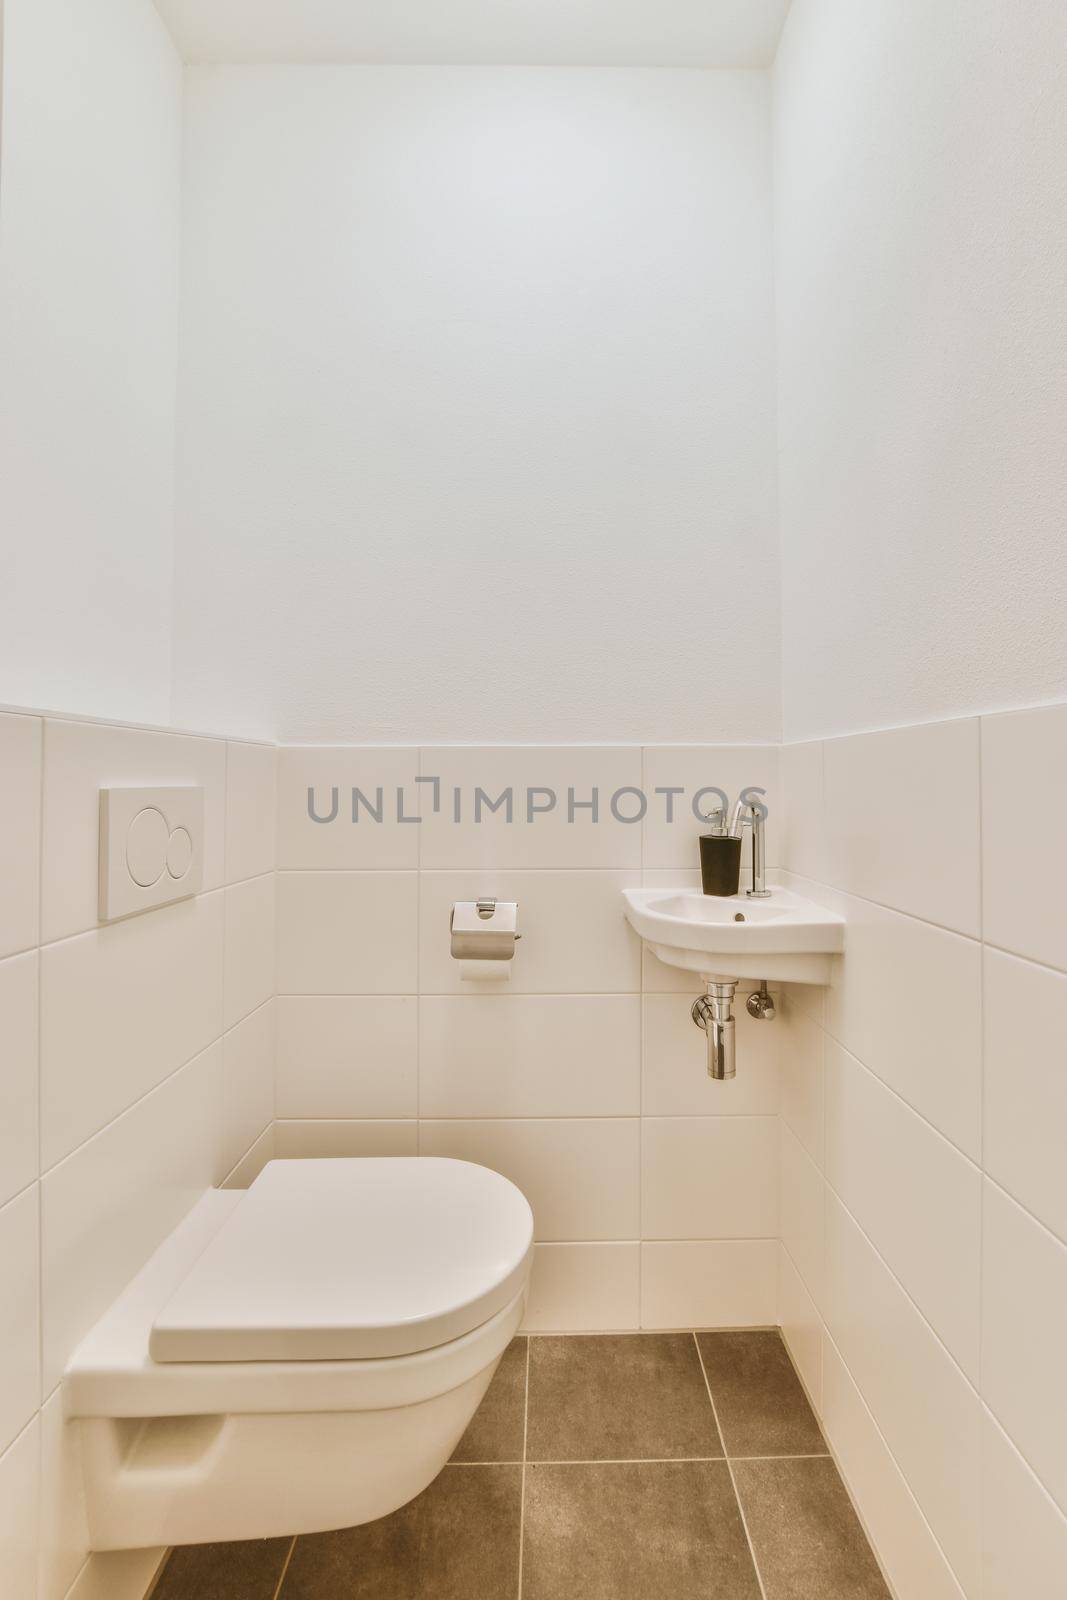 Stylish interior design of a bathroom by casamedia